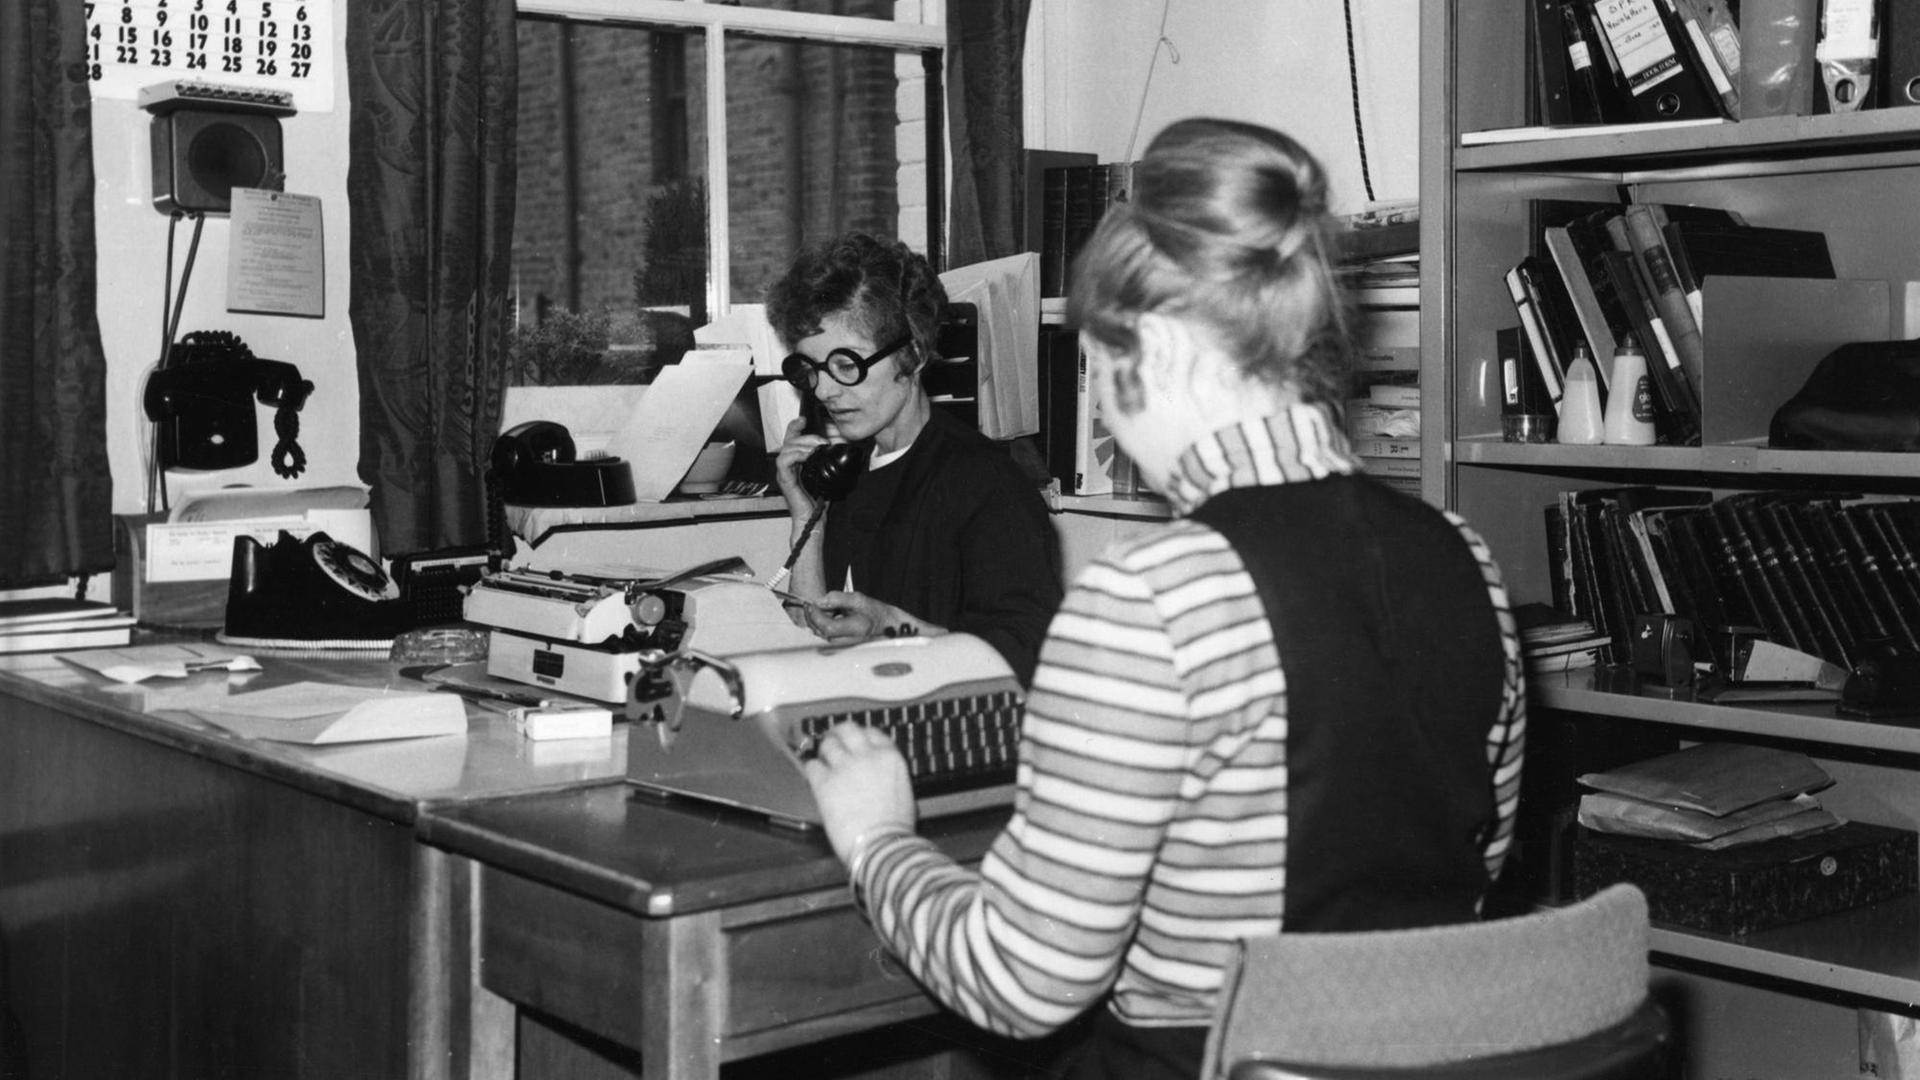 Archivbild: zwei Frauen sitzen in einem Büro, eine telefoniert, die andere tippt auf einer Schreibmaschine